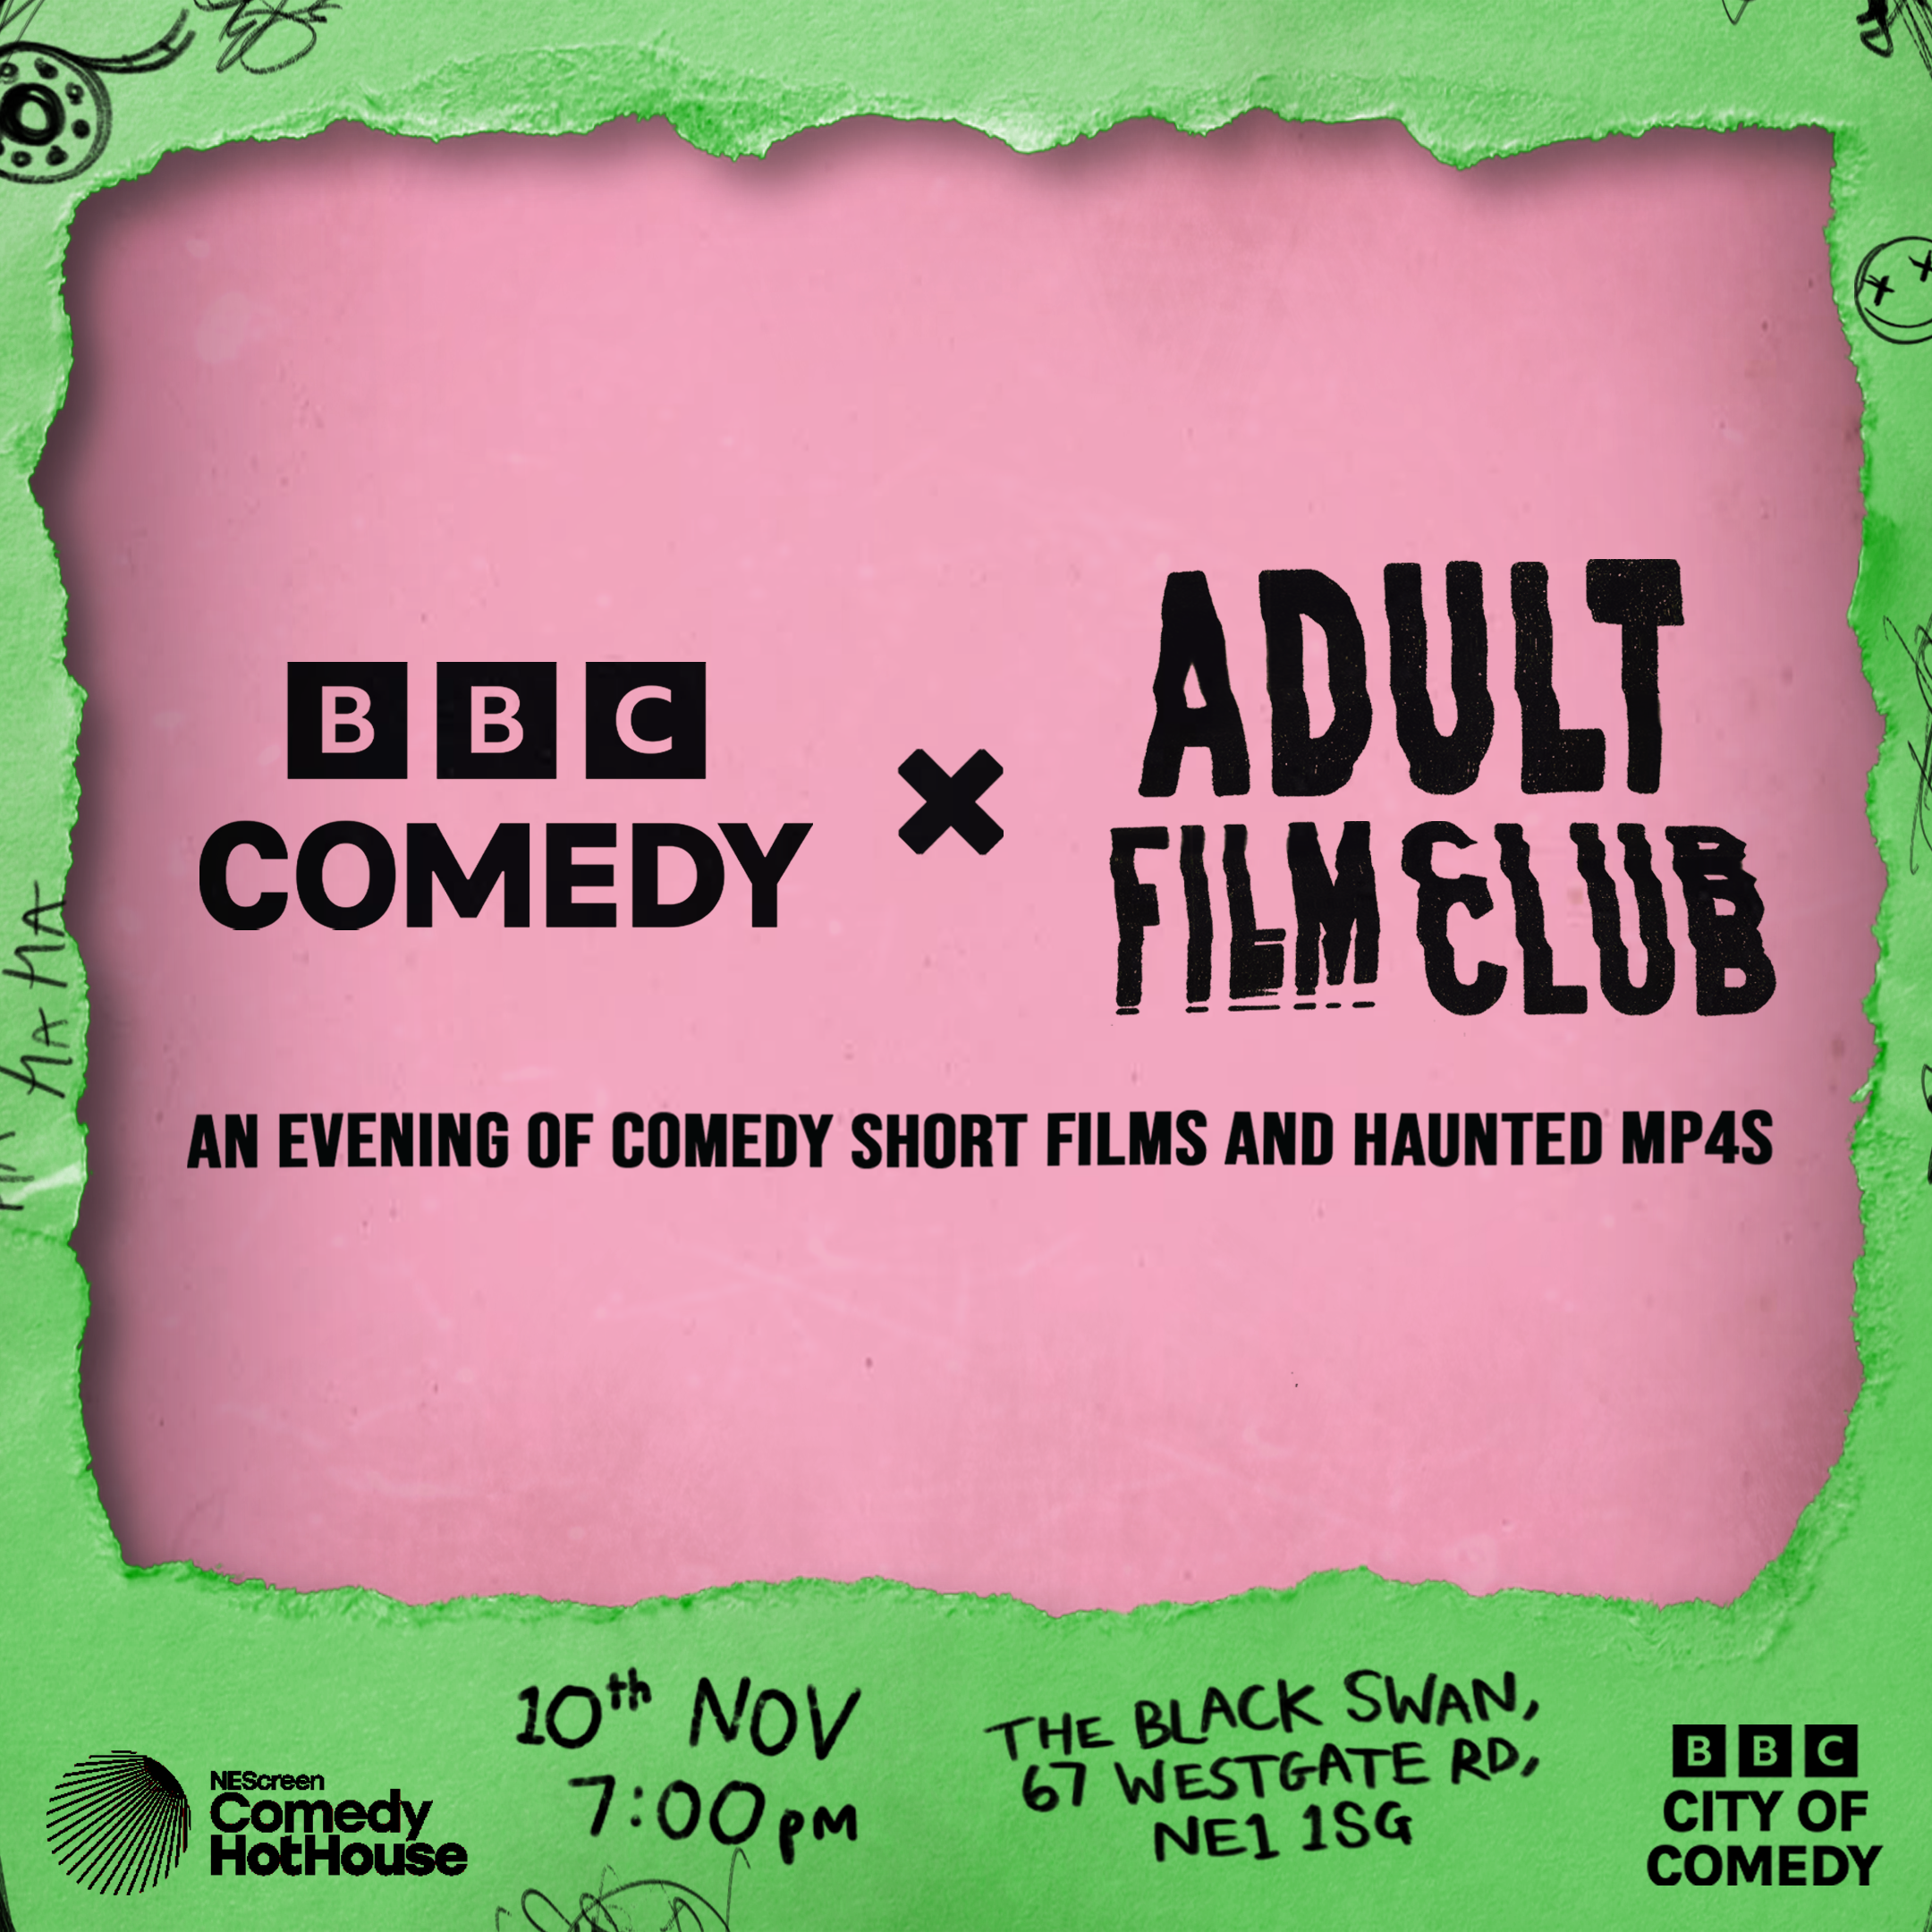 BBC Comedy presents: Adult Film Club 2